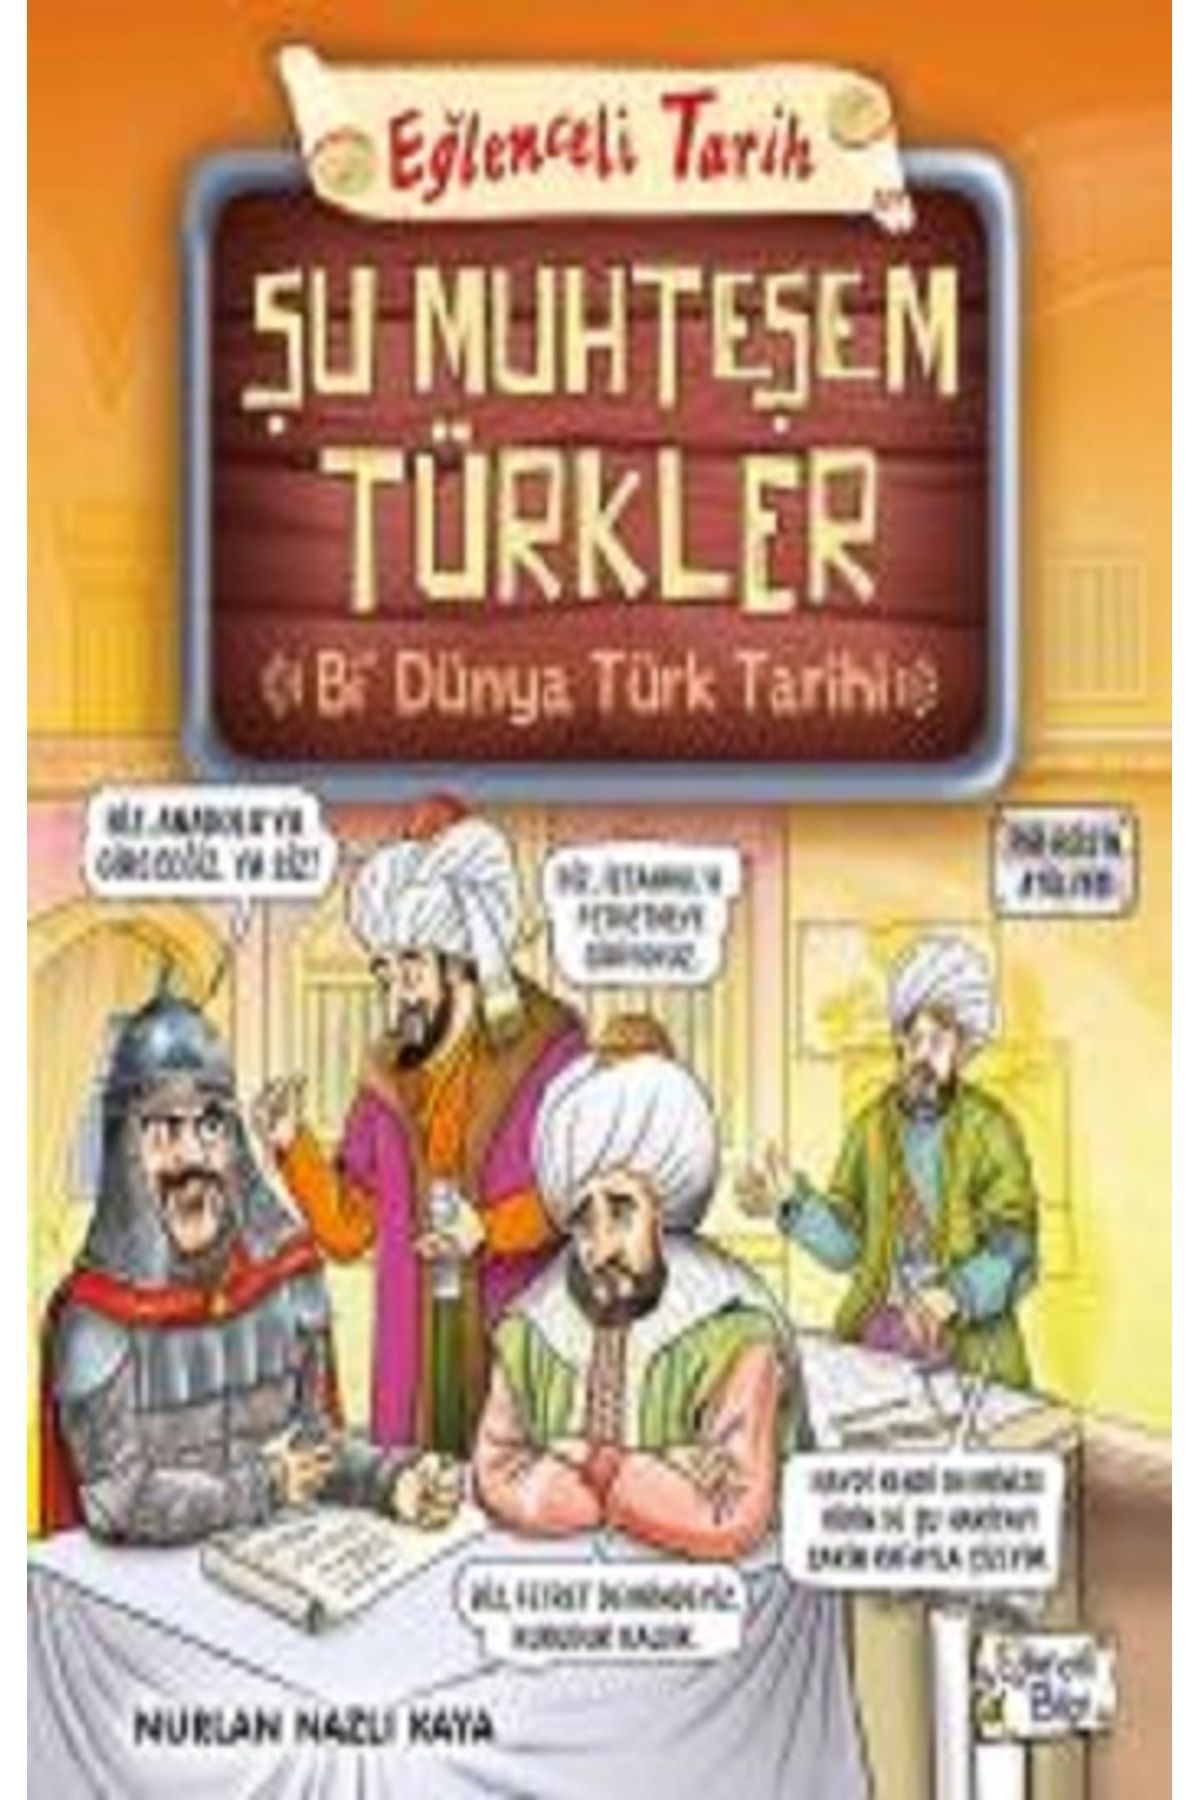 Eğlenceli Bilgi Yayınları Şu Muhteşem Türkler - Bi Dünya Türk Tarihi